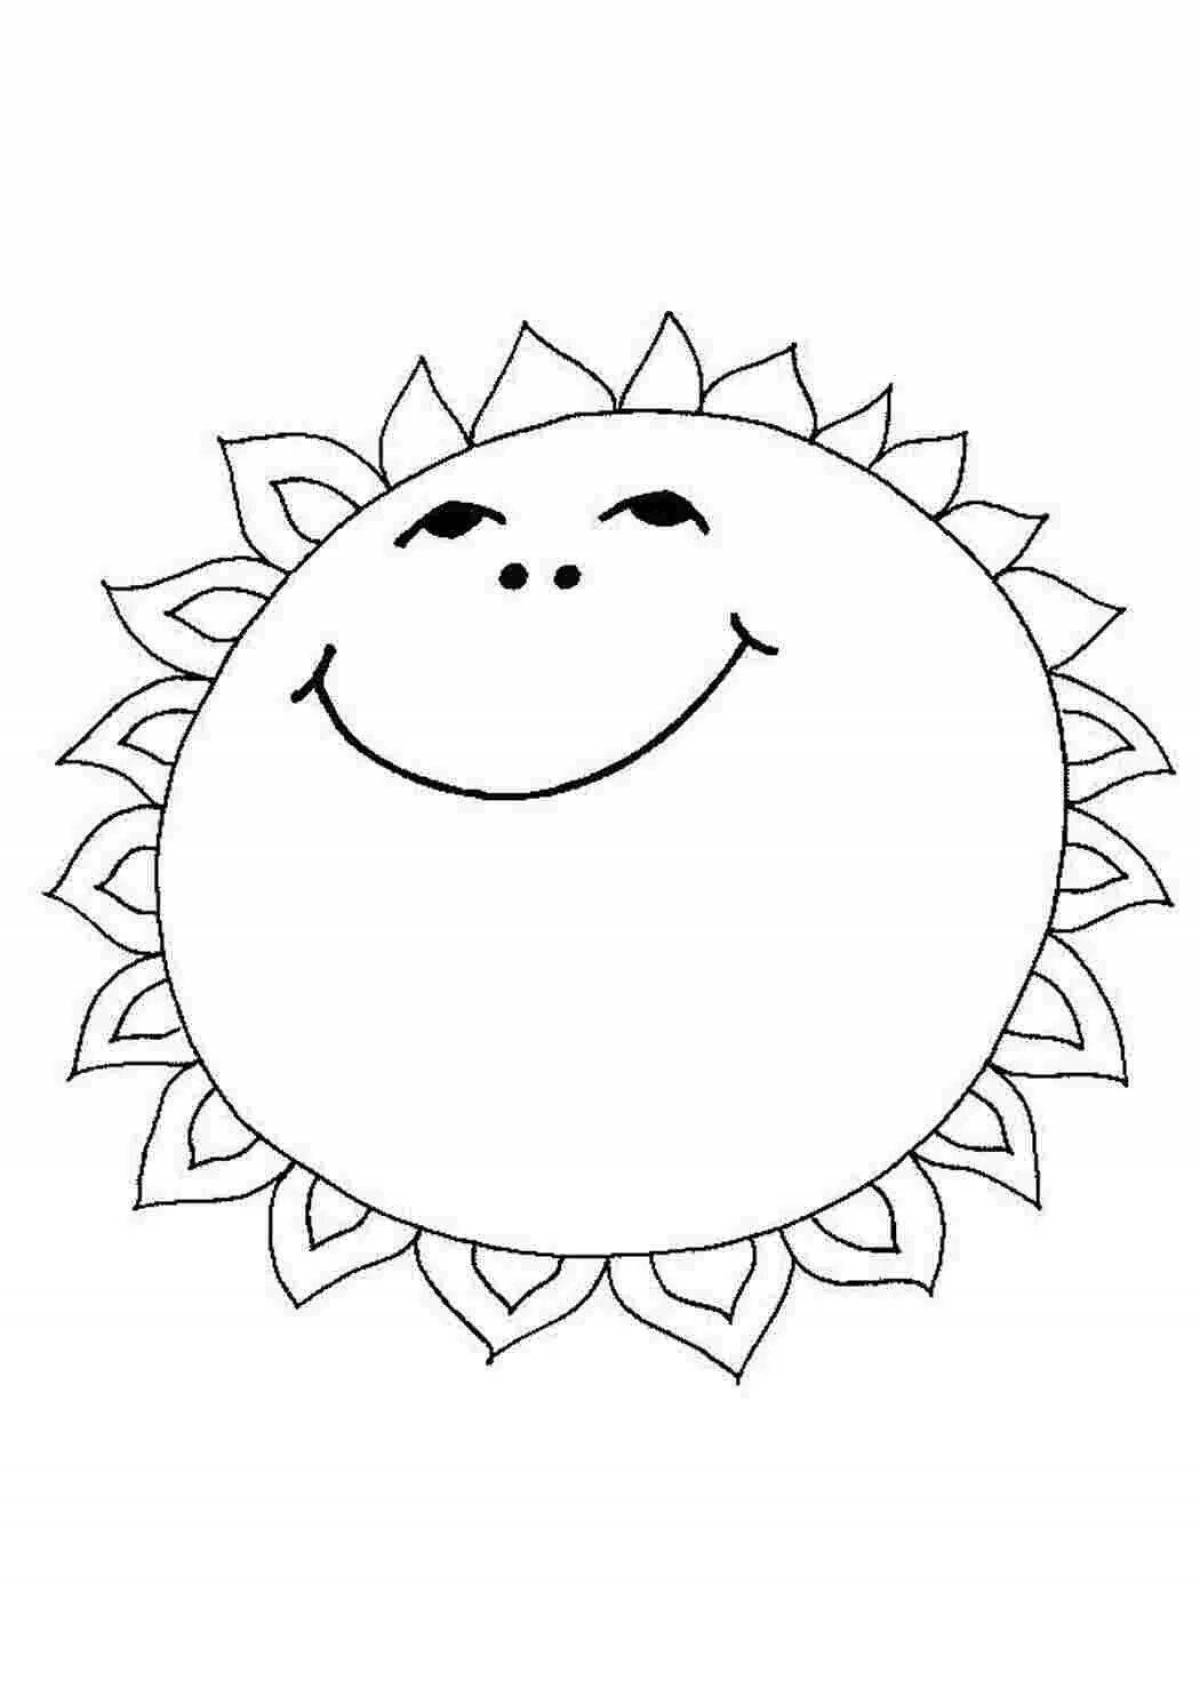 Bright coloring solar figure